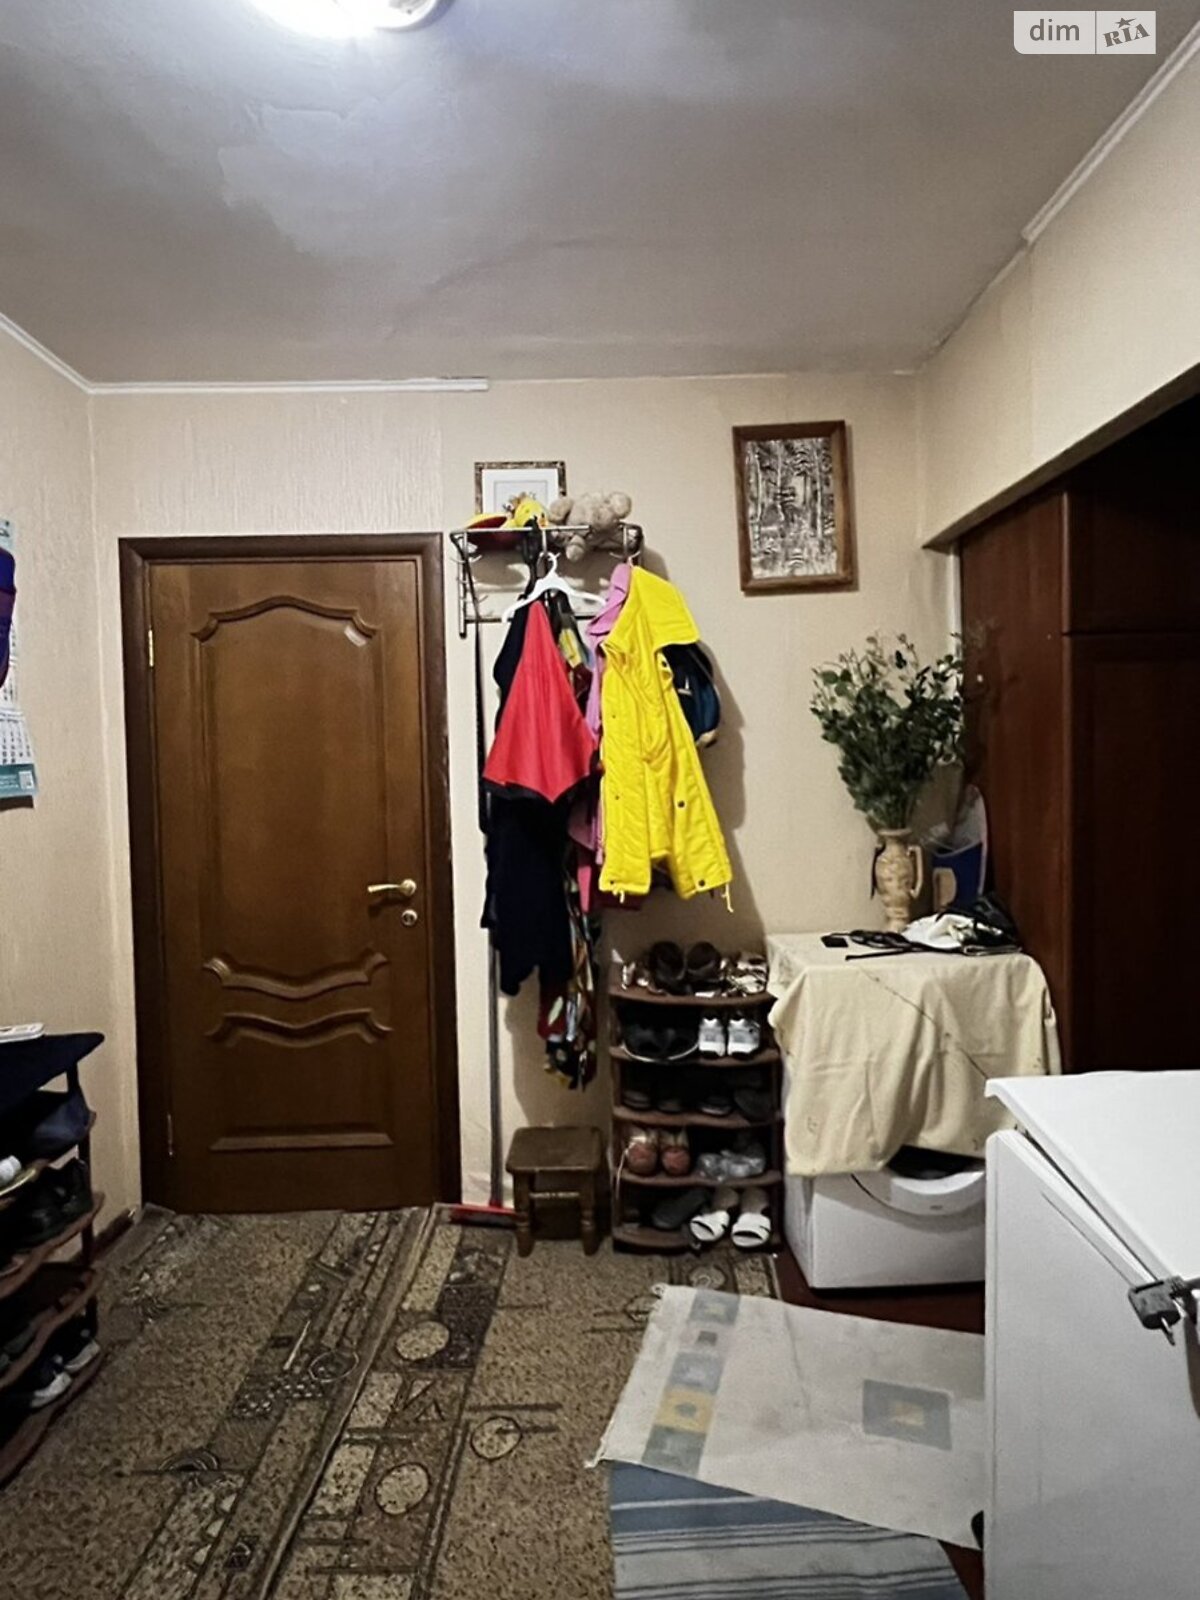 Комната в Киеве, на ул. Азербайджанская 8Б в районе Днепровский на продажу фото 1